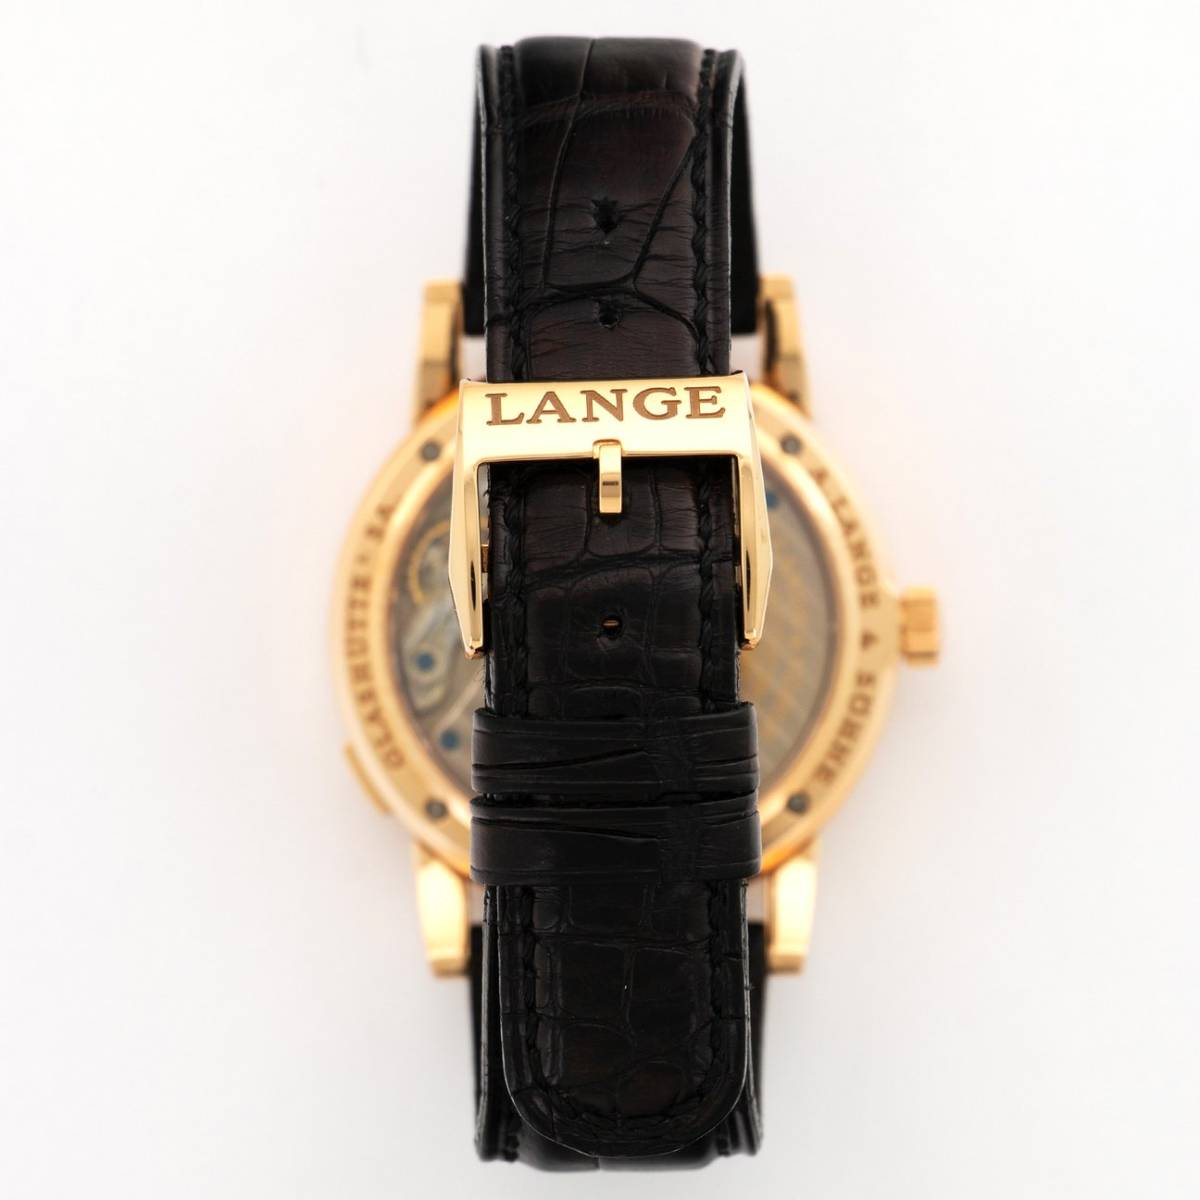 *A.LANGE & SOHNE*A. Lange&Sohne Lange 1 Lange 1 101.031 чёрный бриллиант ruK18RG высший класс наручные часы редкий прекрасный товар!! трудно найти!!